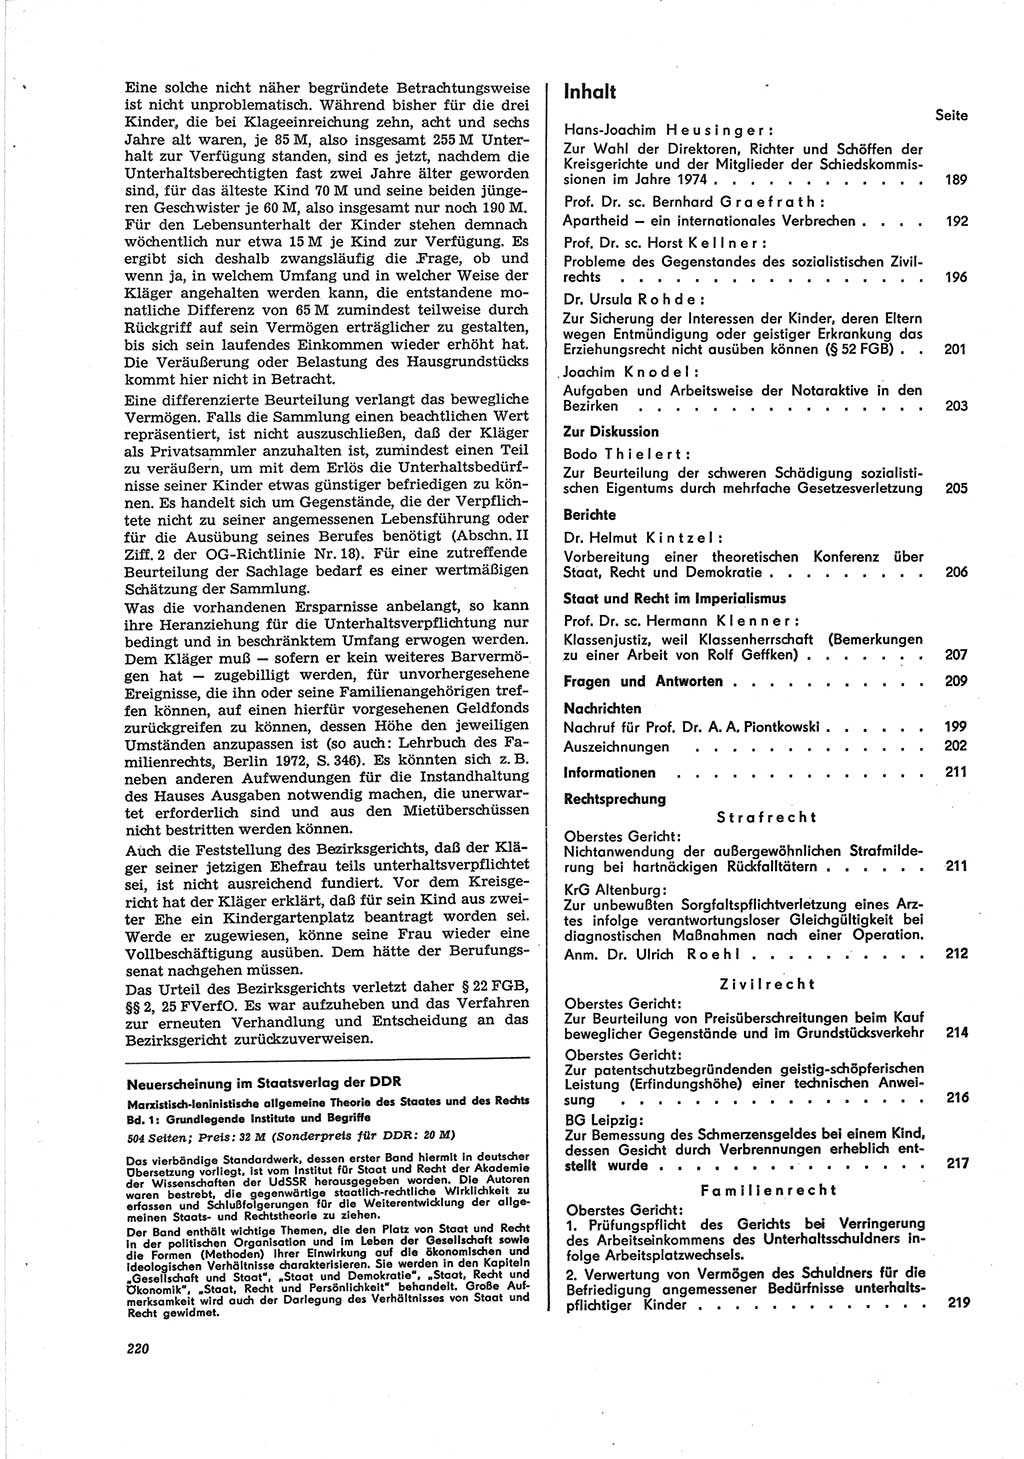 Neue Justiz (NJ), Zeitschrift für Recht und Rechtswissenschaft [Deutsche Demokratische Republik (DDR)], 28. Jahrgang 1974, Seite 220 (NJ DDR 1974, S. 220)